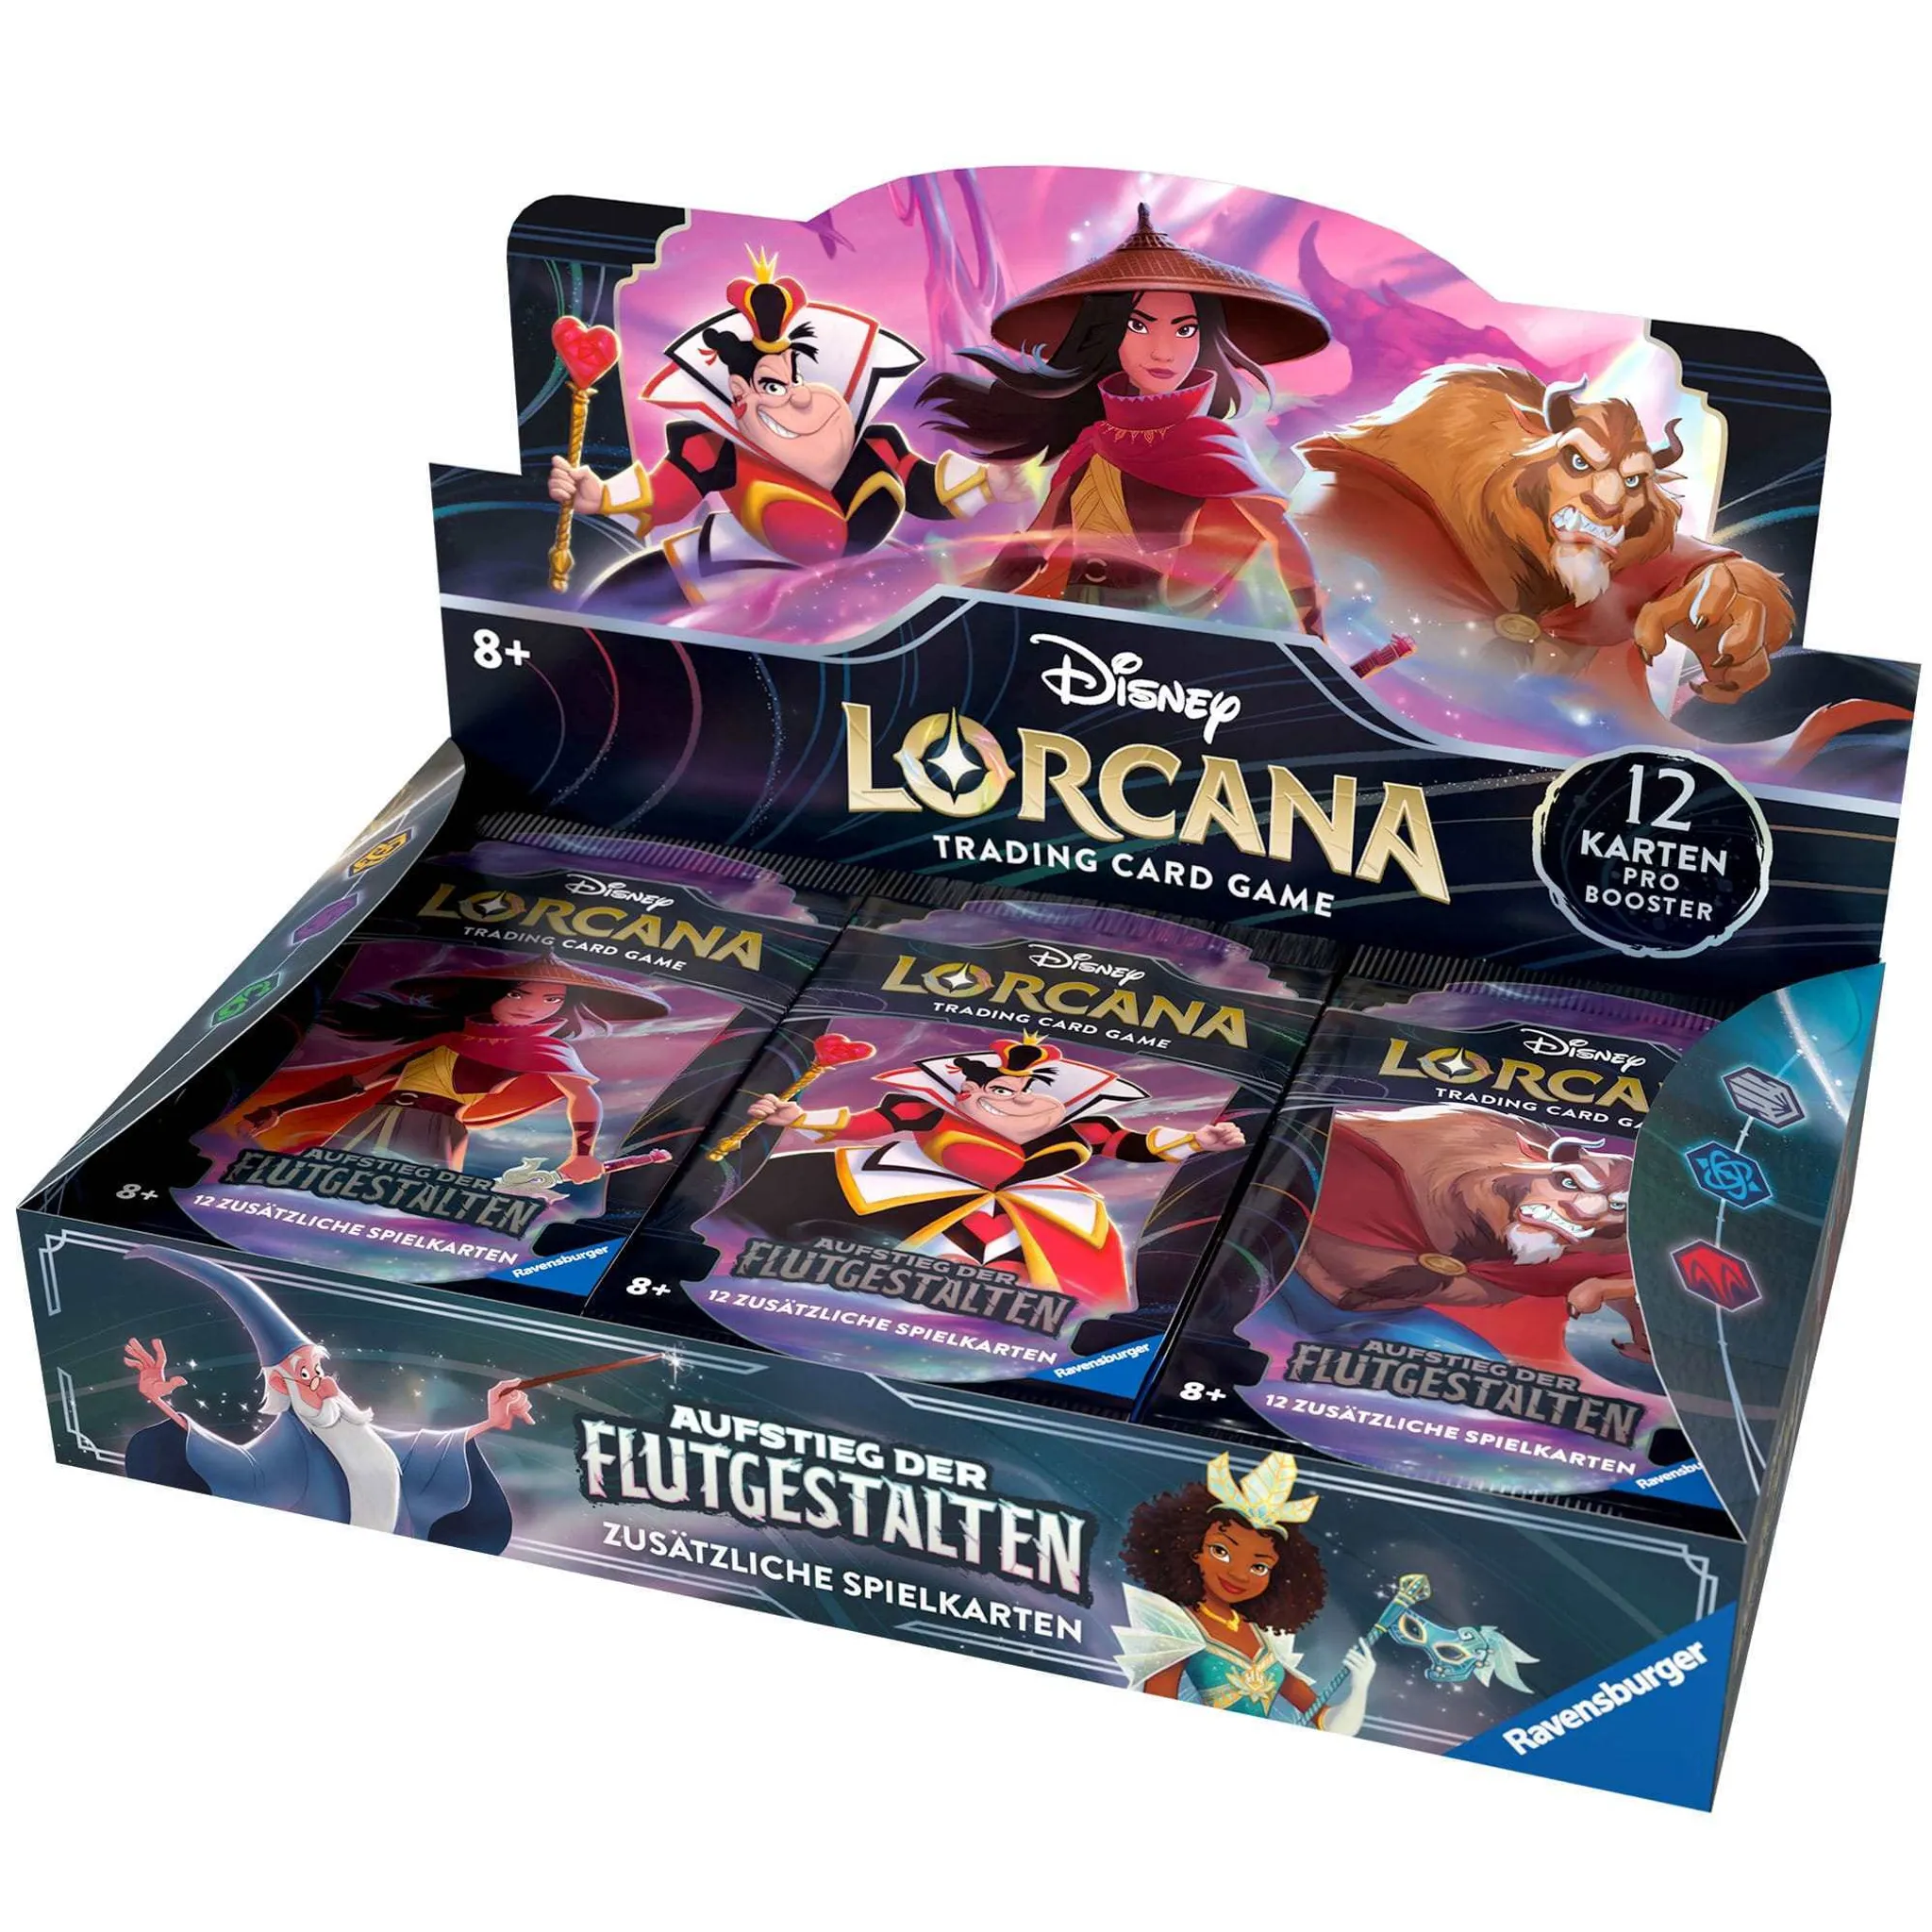 Disney Lorcana - Aufstieg der Flutgestalten - Disney 100 Jahre Geschenke-Set  (deutsch), Disney Lorcana, Sammelkartenspiele